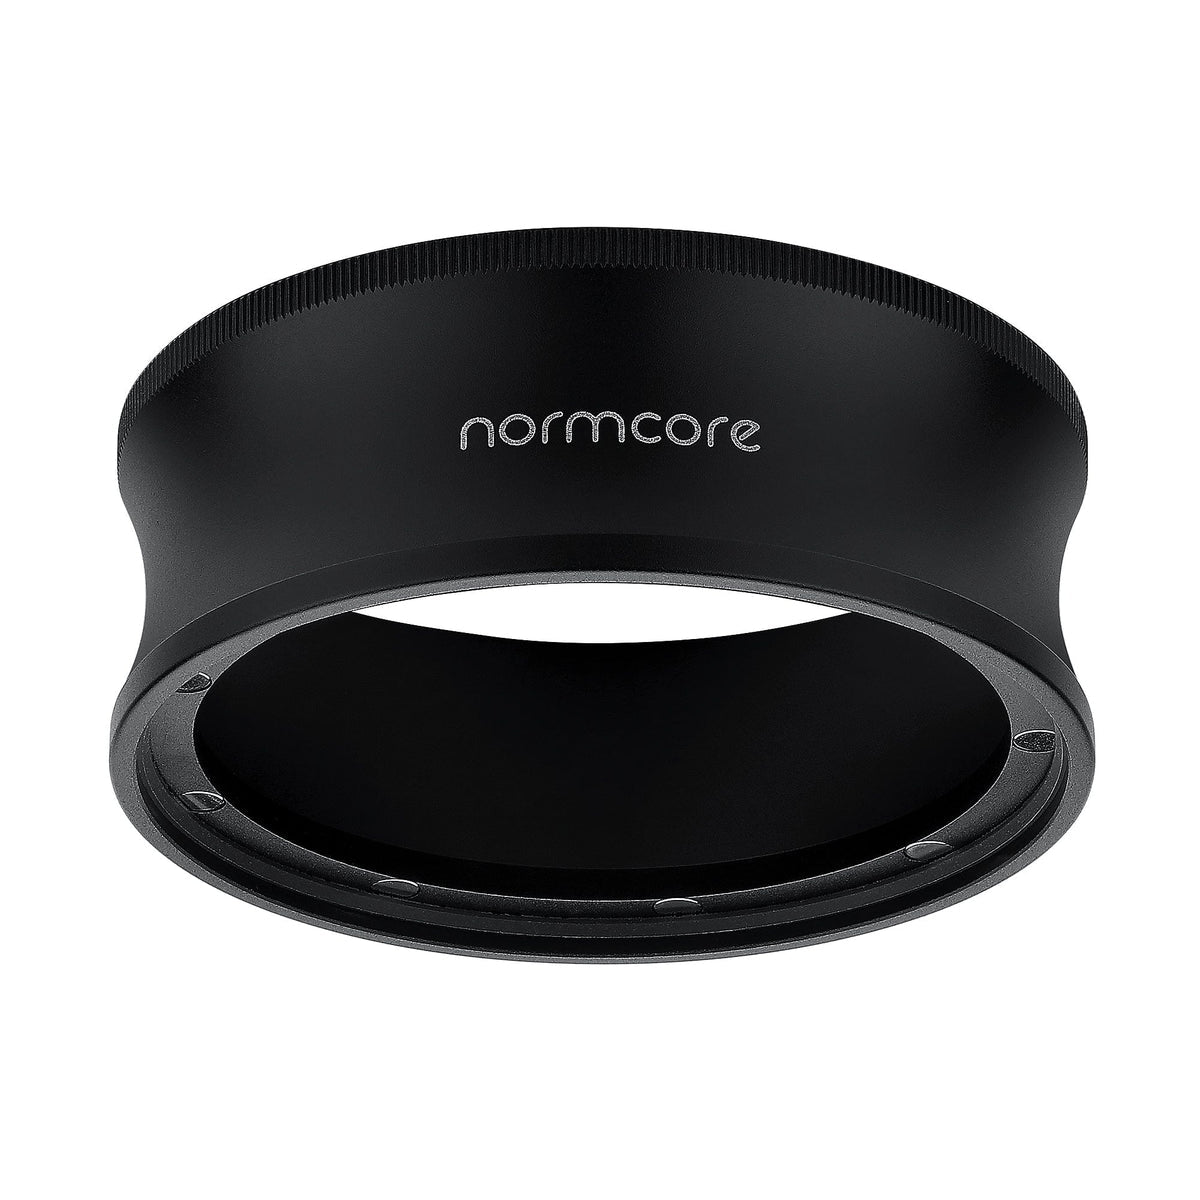 Normcore Premium Dosier Trichter 58 mm hohe Version - magnetisch - Coffee Coaching Club